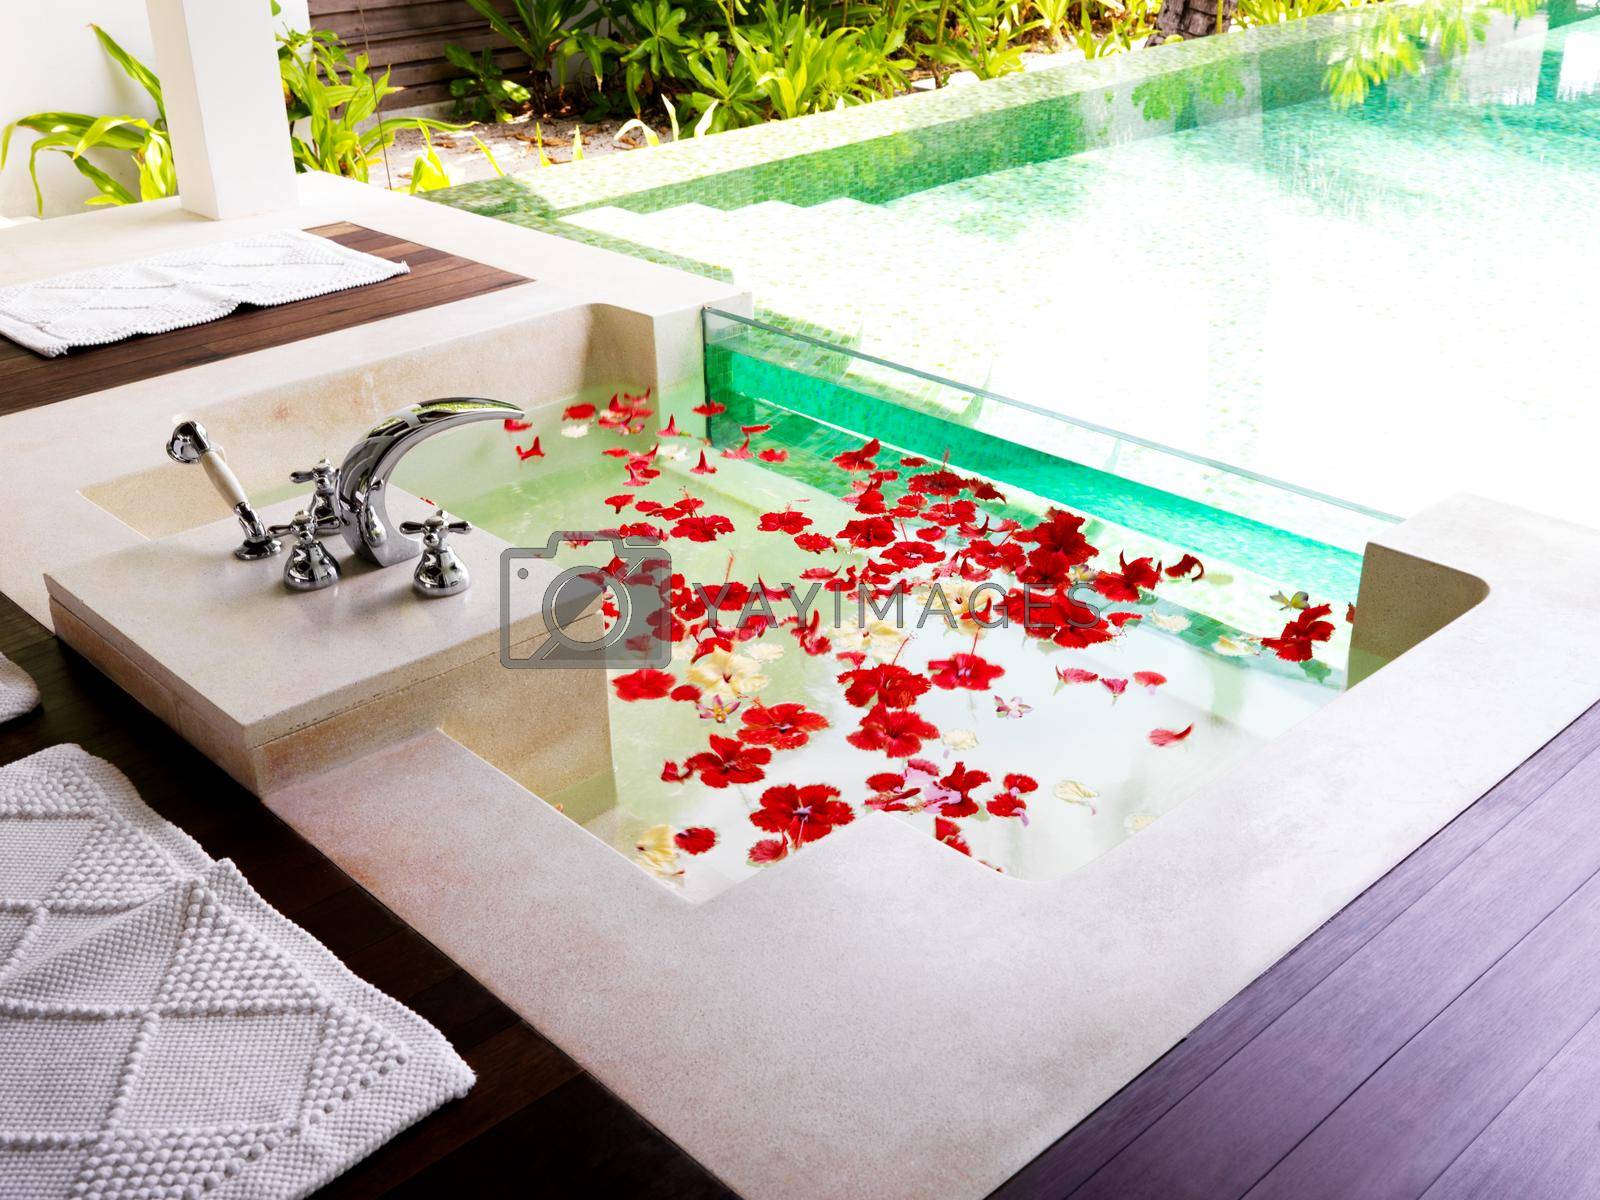 Modern bathroom with bath tub full of flower petals at a spa resort.